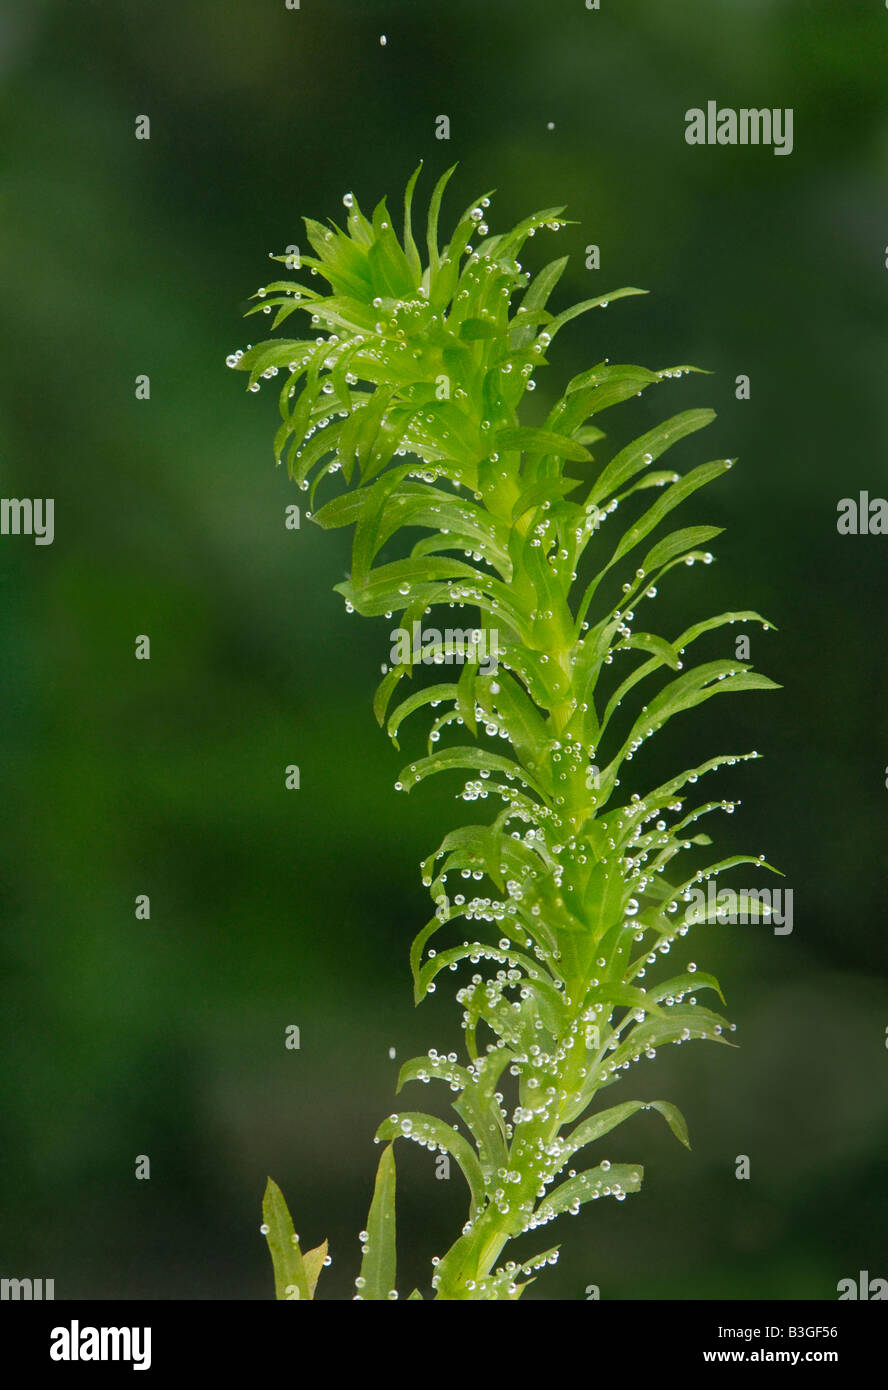 Rametto della pianta acquatica Elodea, stagno weed produrre bolle di ossigeno dalla fotosintesi Foto Stock